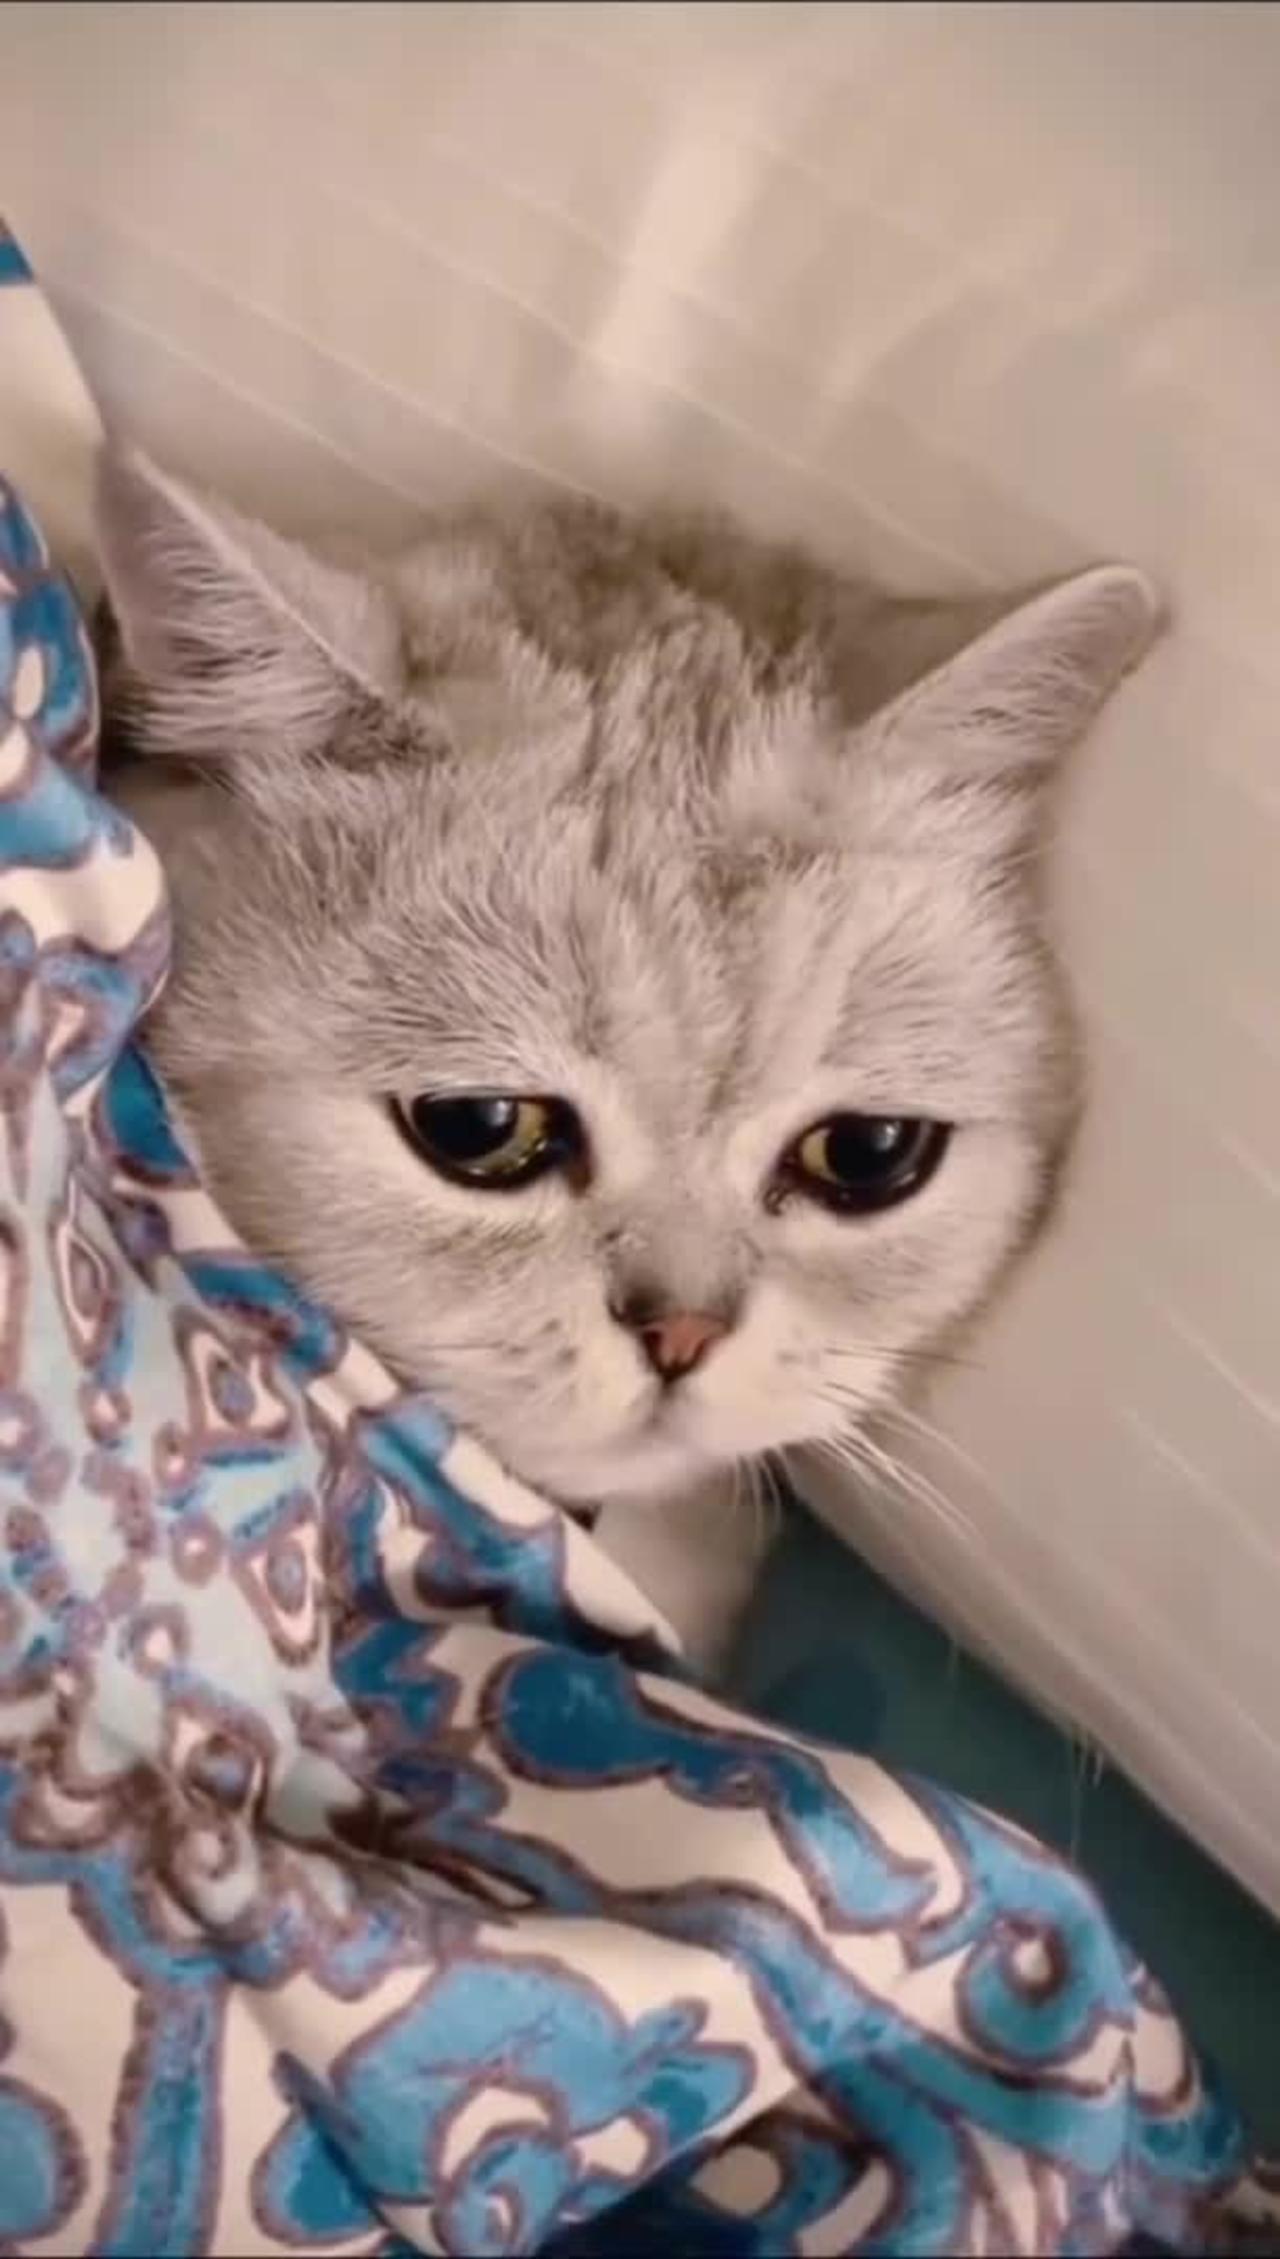 Cute little cat feeling depressed 😭😭😭🐱🐱